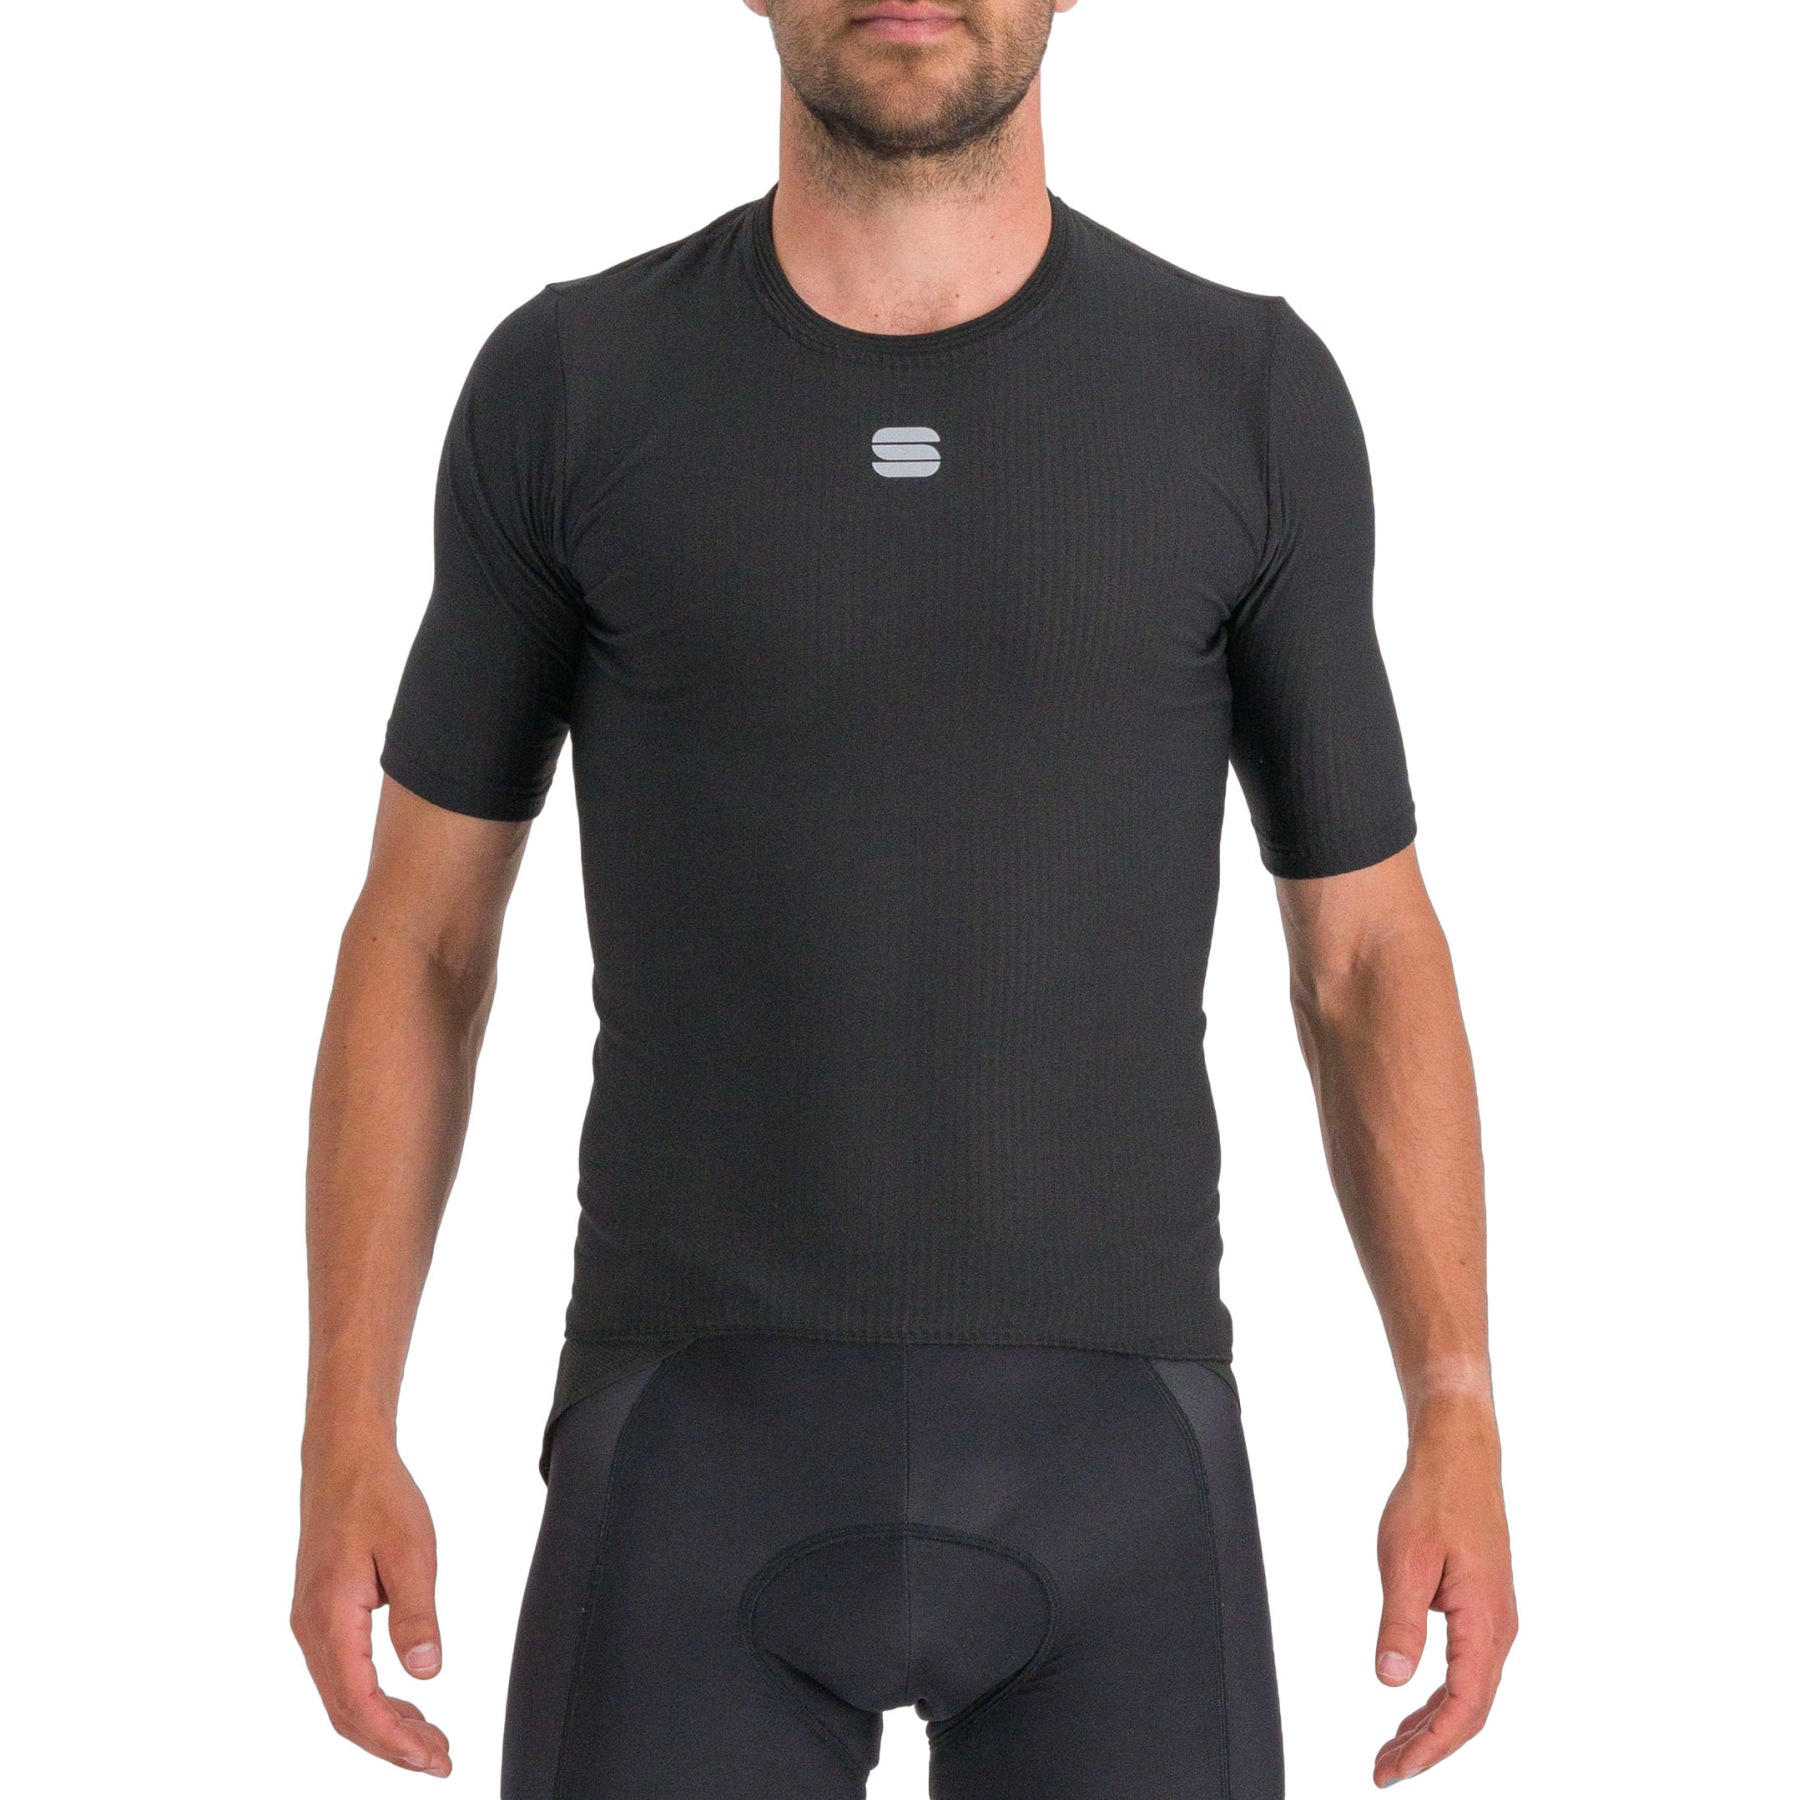 Produktbild von Sportful Bodyfit Pro Baselayer Kurzarm-Unterhemd - 002 Black